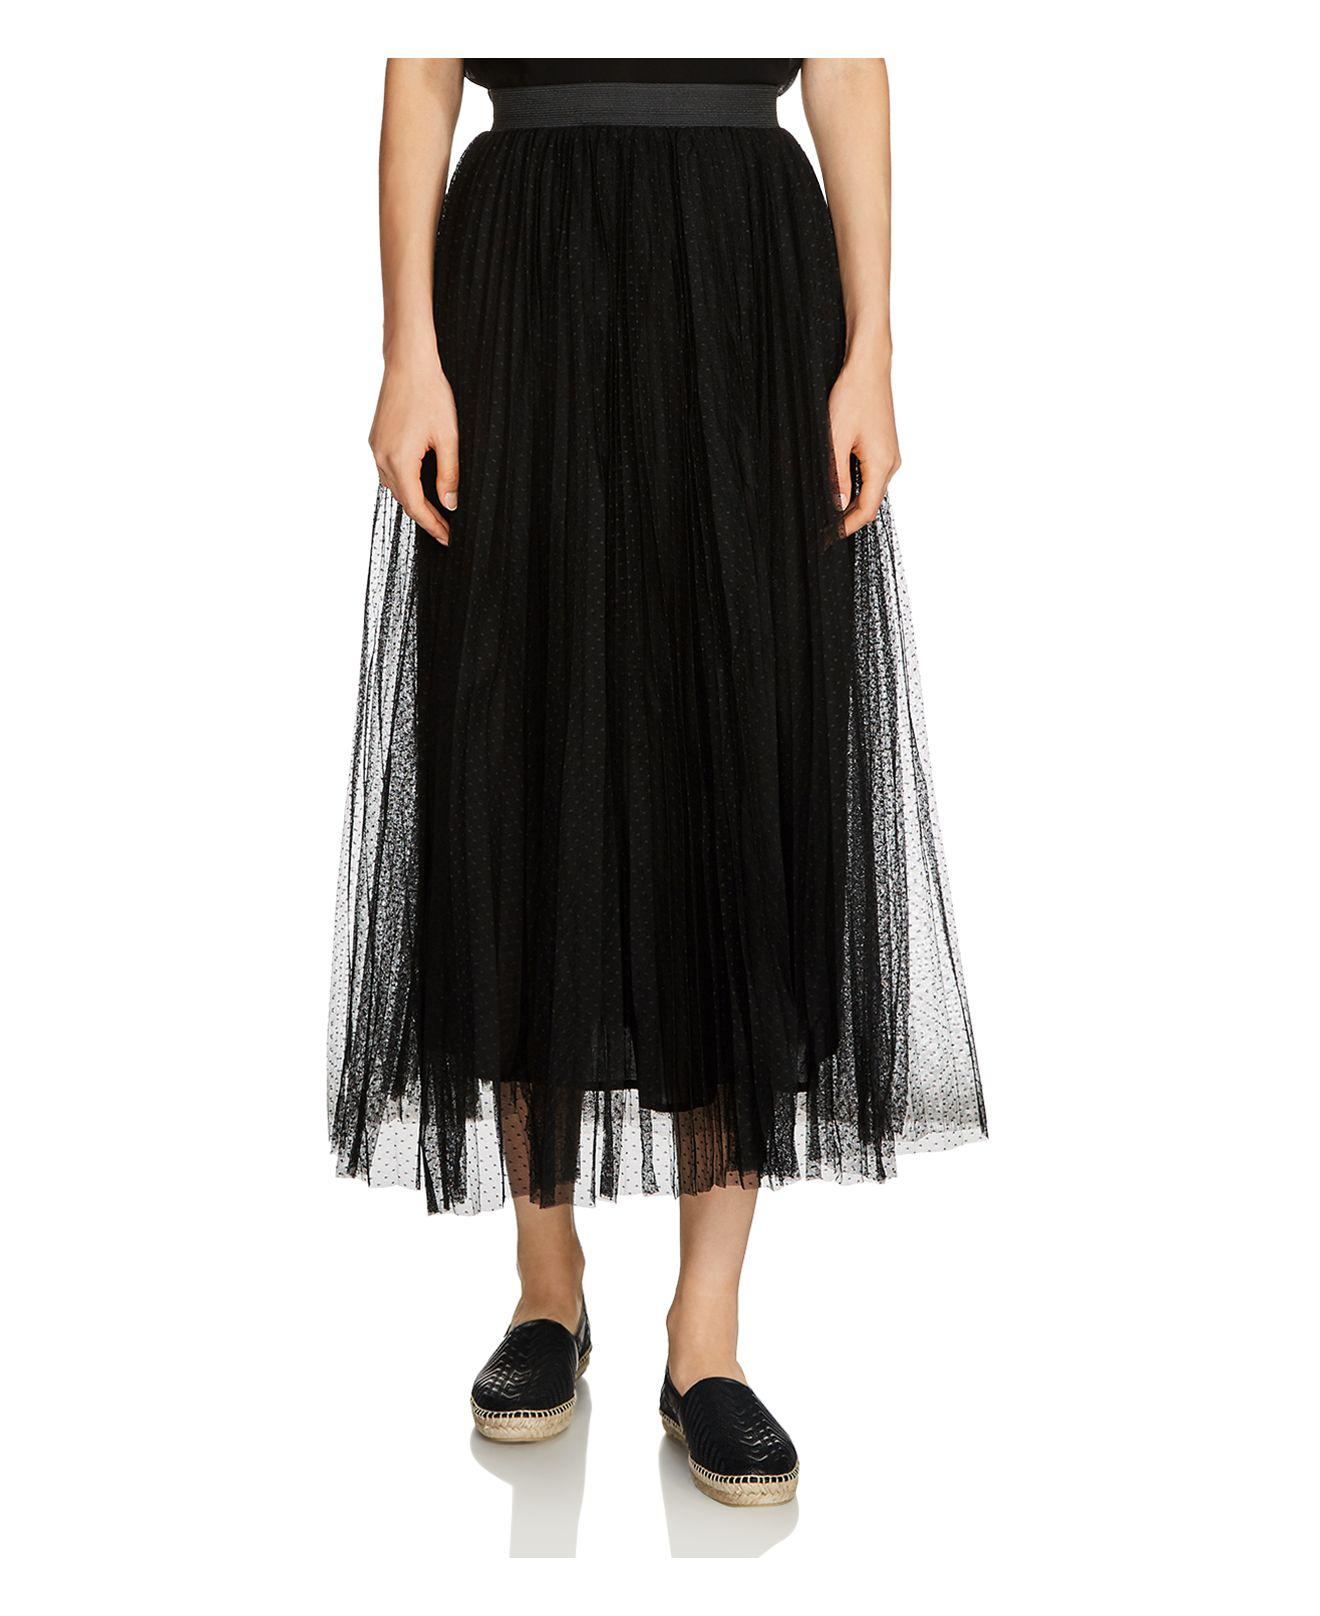 Maje Jesi Tulle Midi Skirt in Black | Lyst Canada